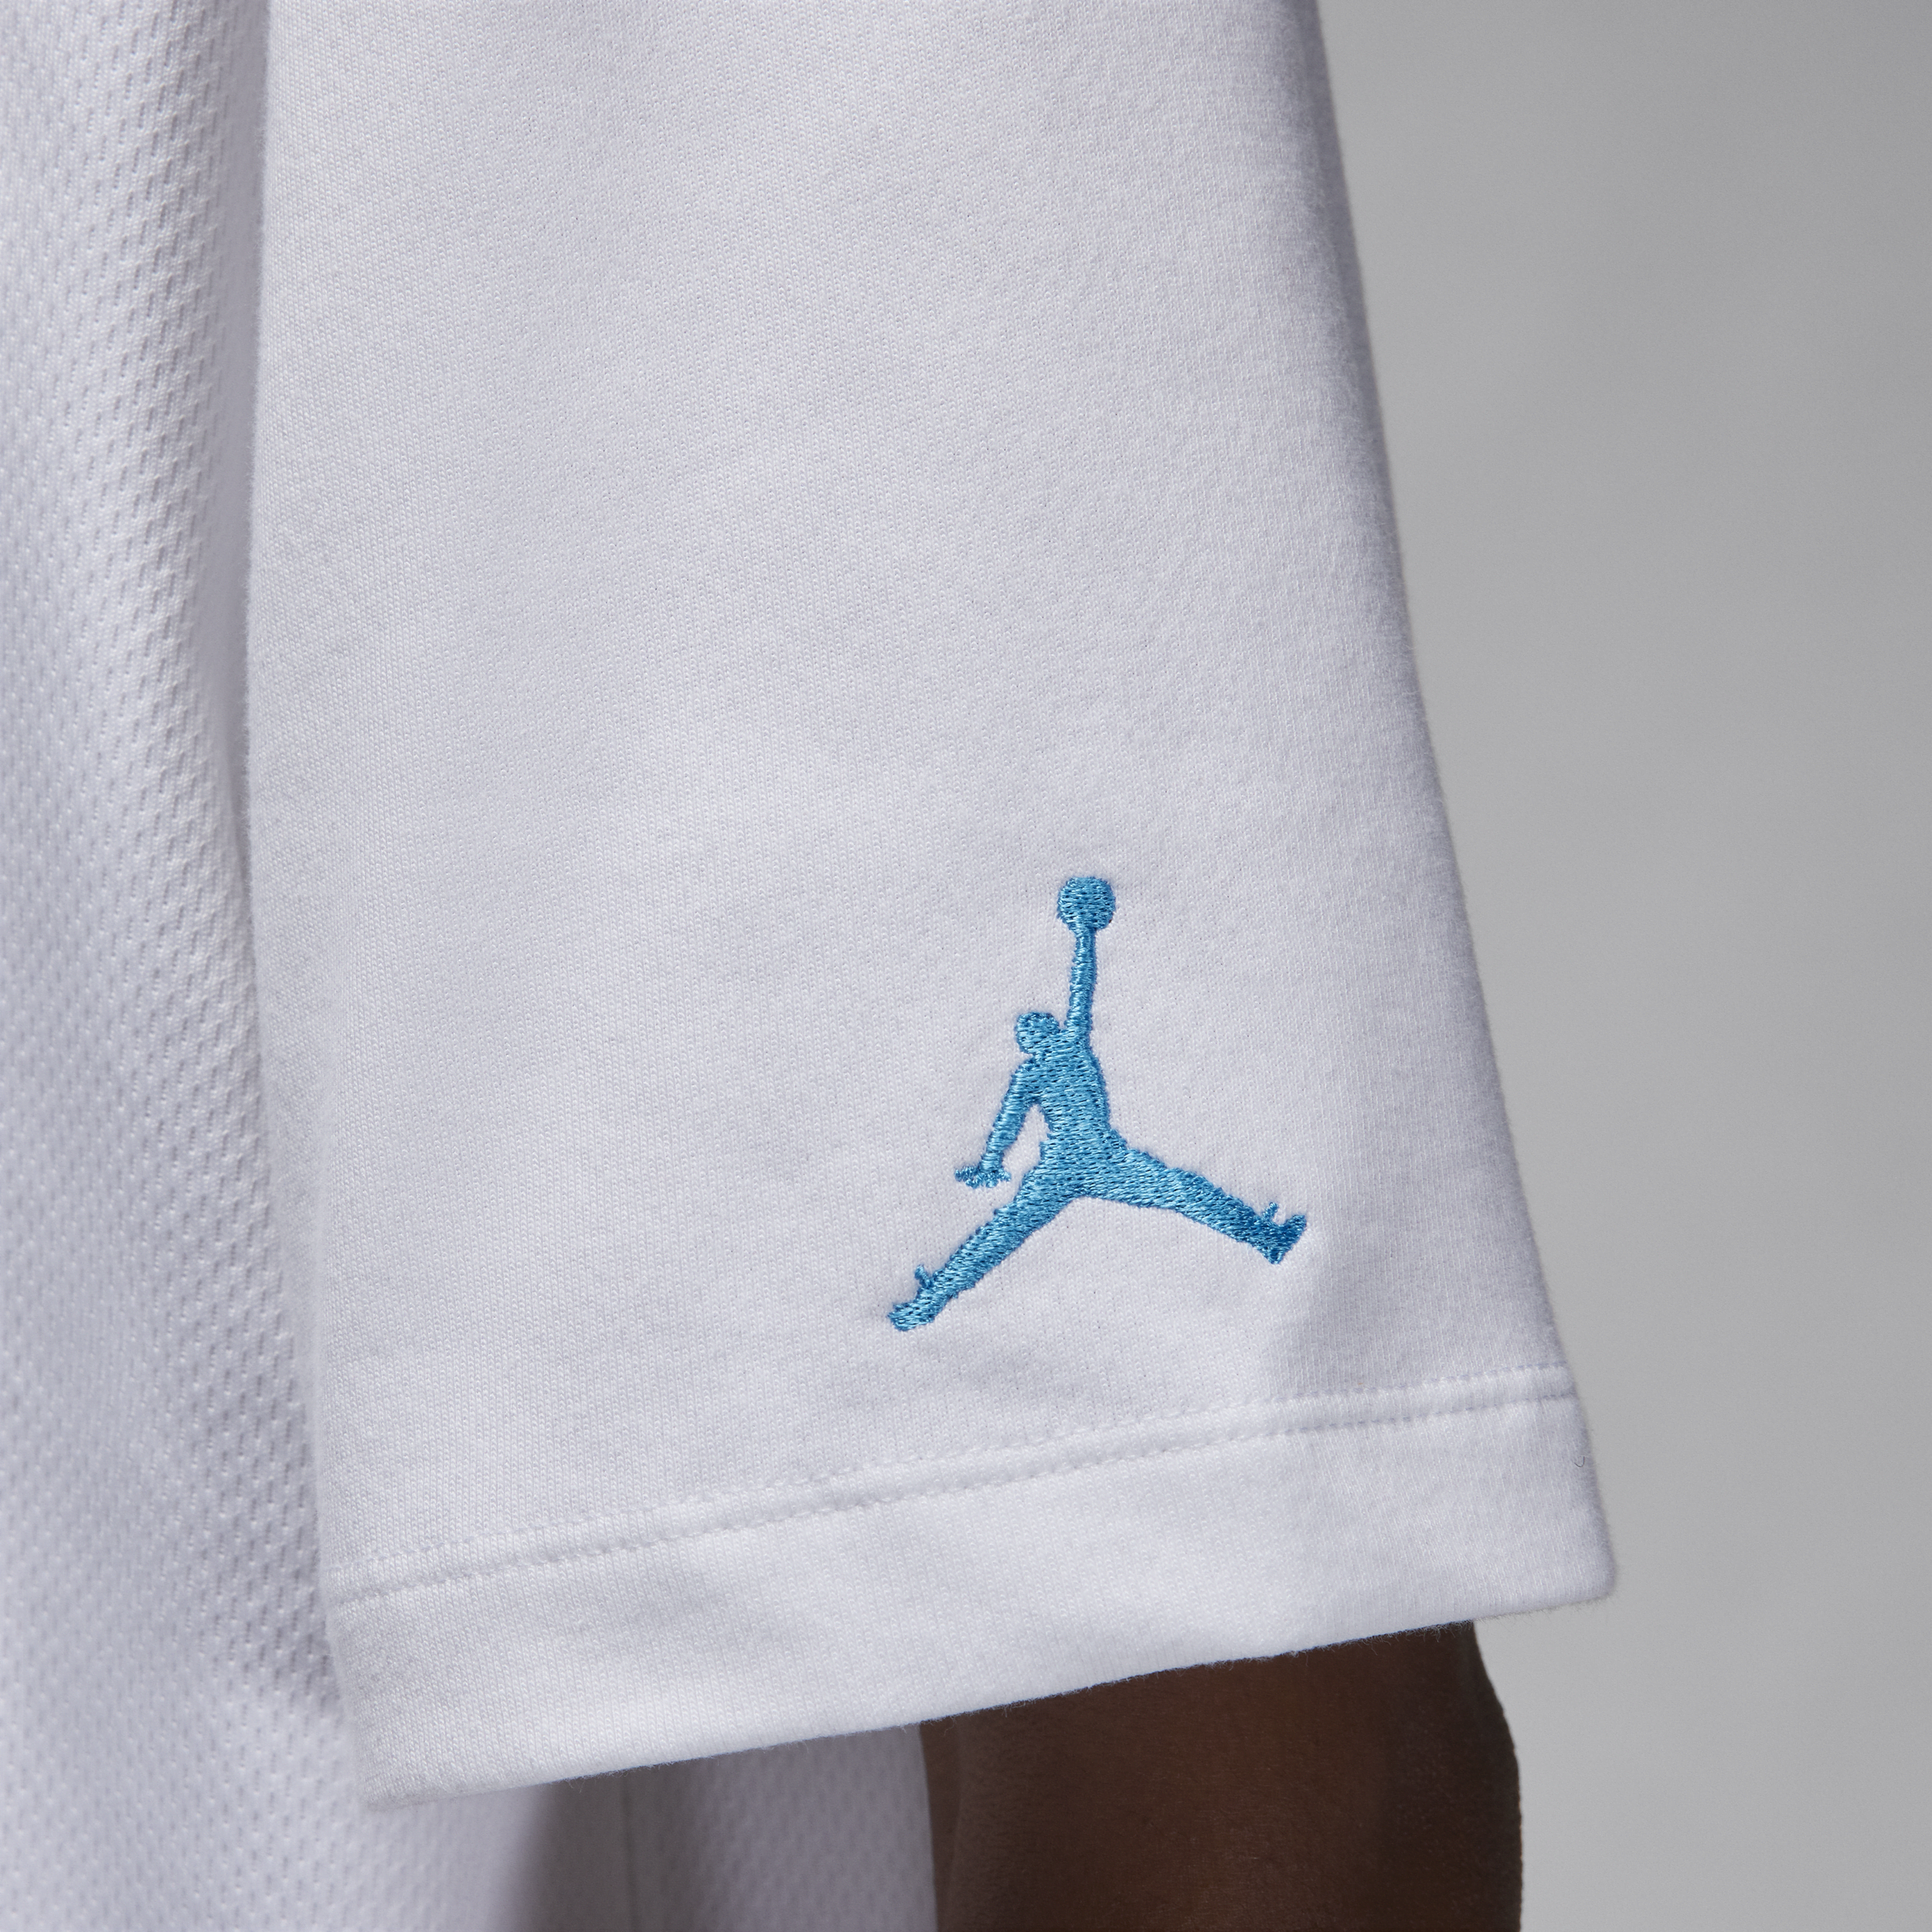 Jordan Flight MVP T-shirt voor heren Wit